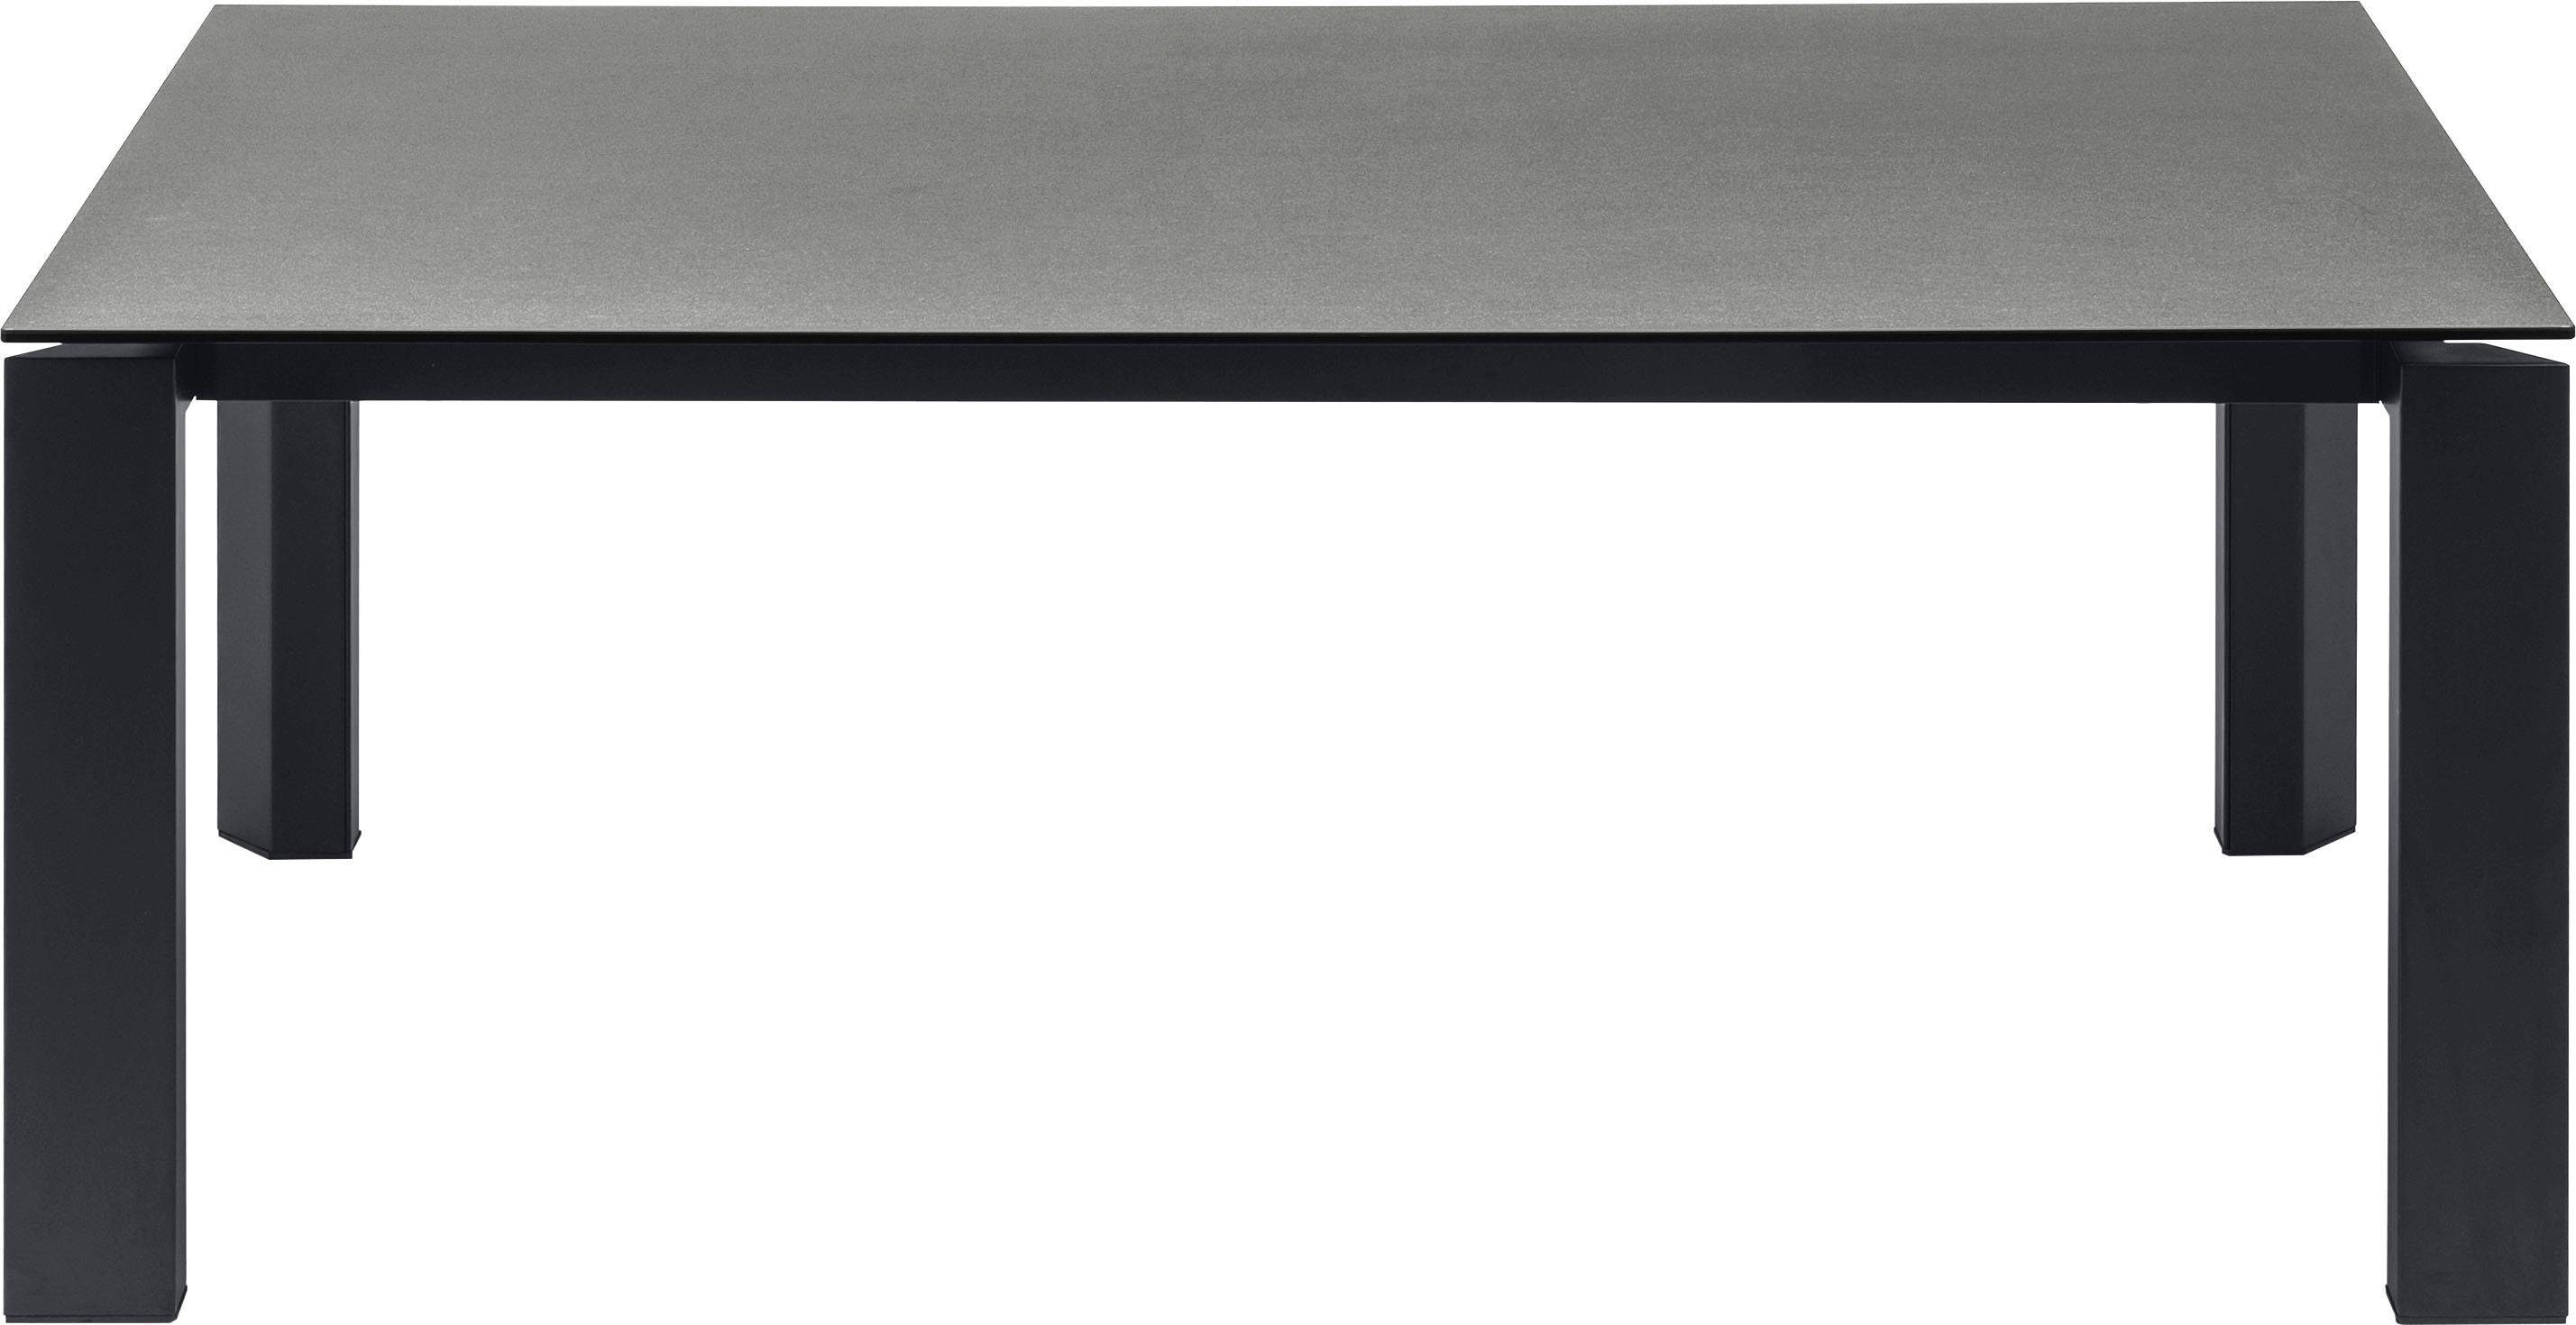 Esstisch matt/Rahmen keramik schwarz matt schwarz Beine | Gate CB/4088 connubia zement